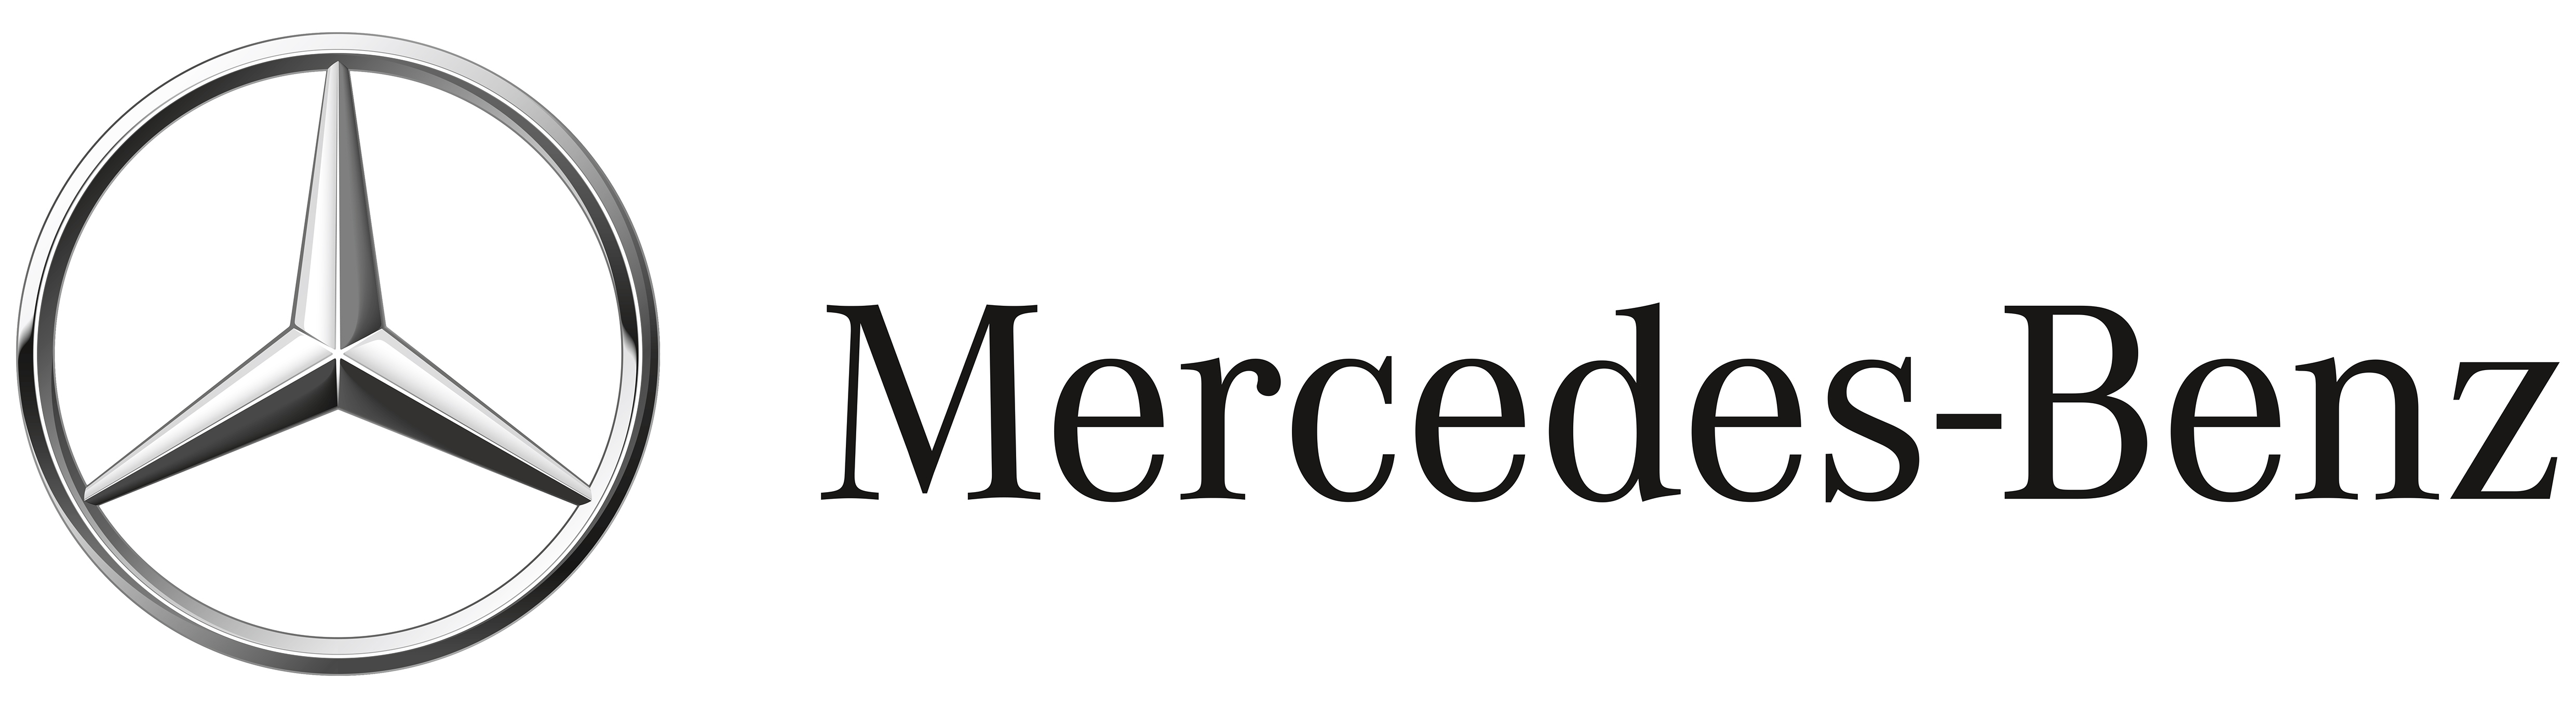 Daimler AG Logo